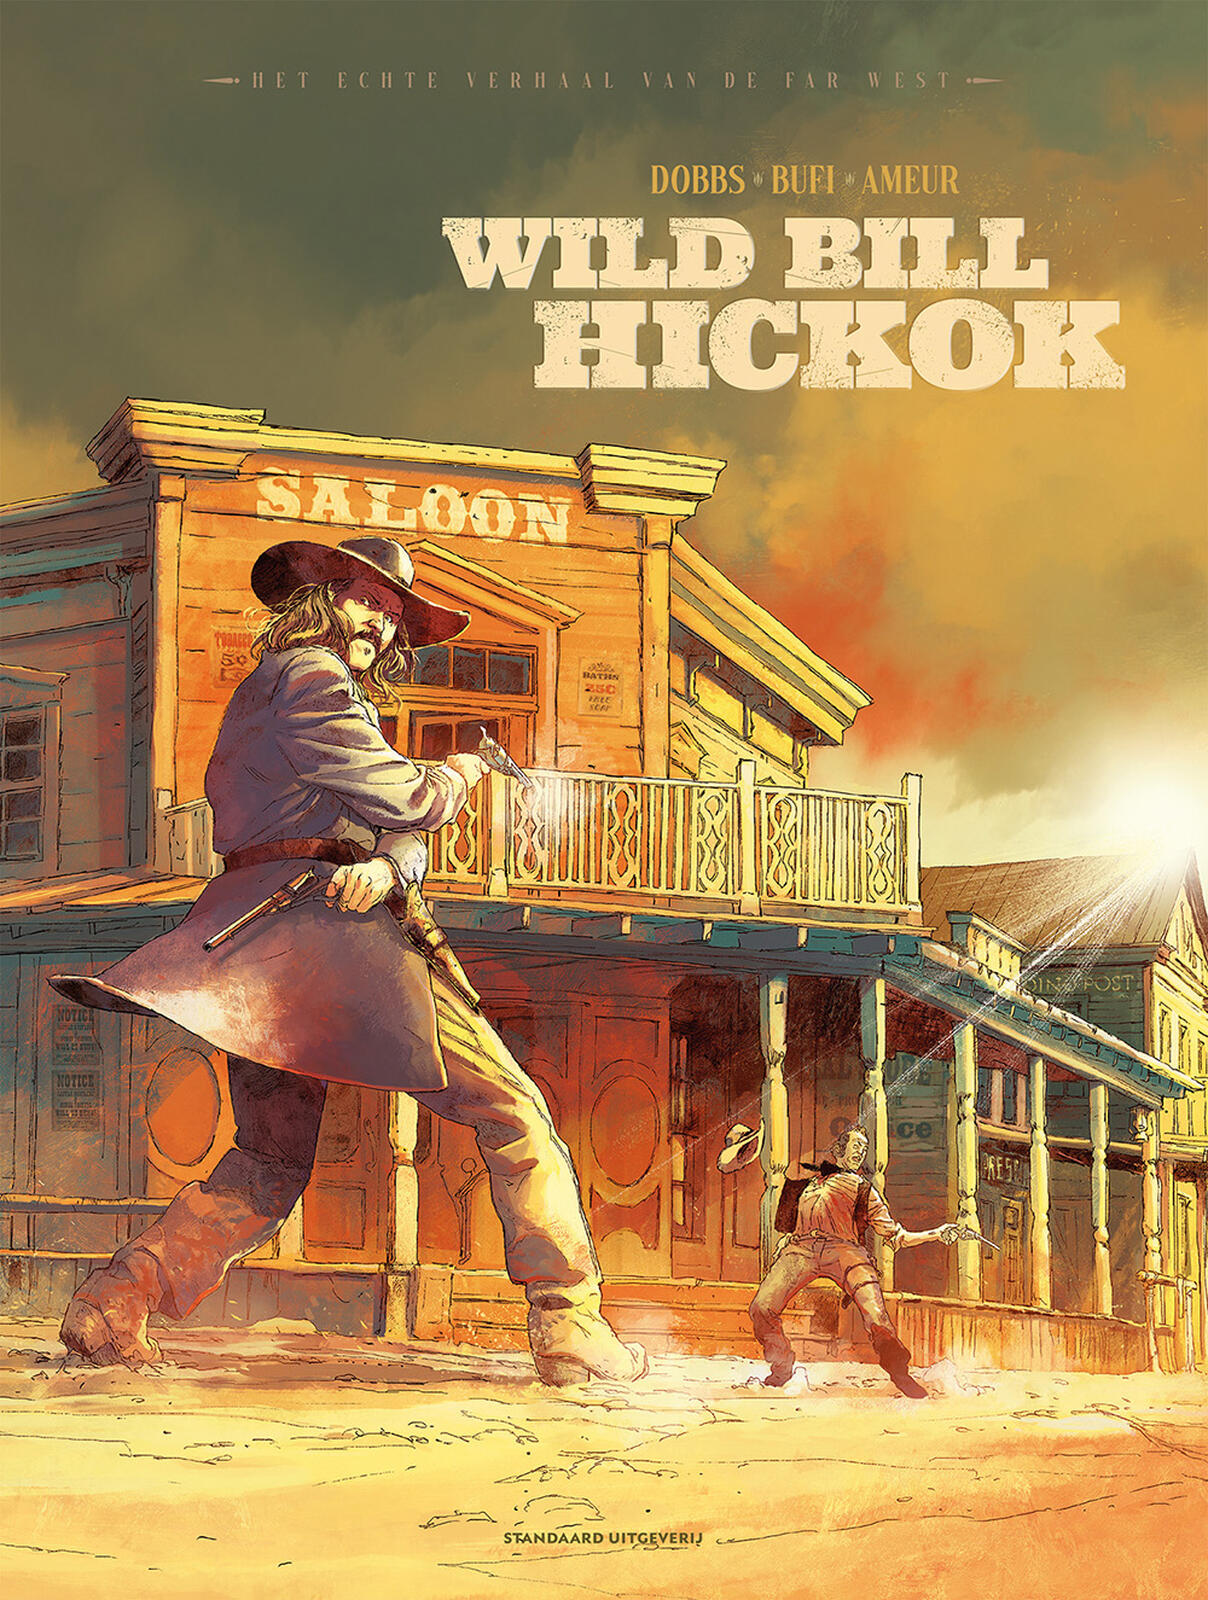 Echte verhaal van de far west, Het 02: Wild Bill Hickok